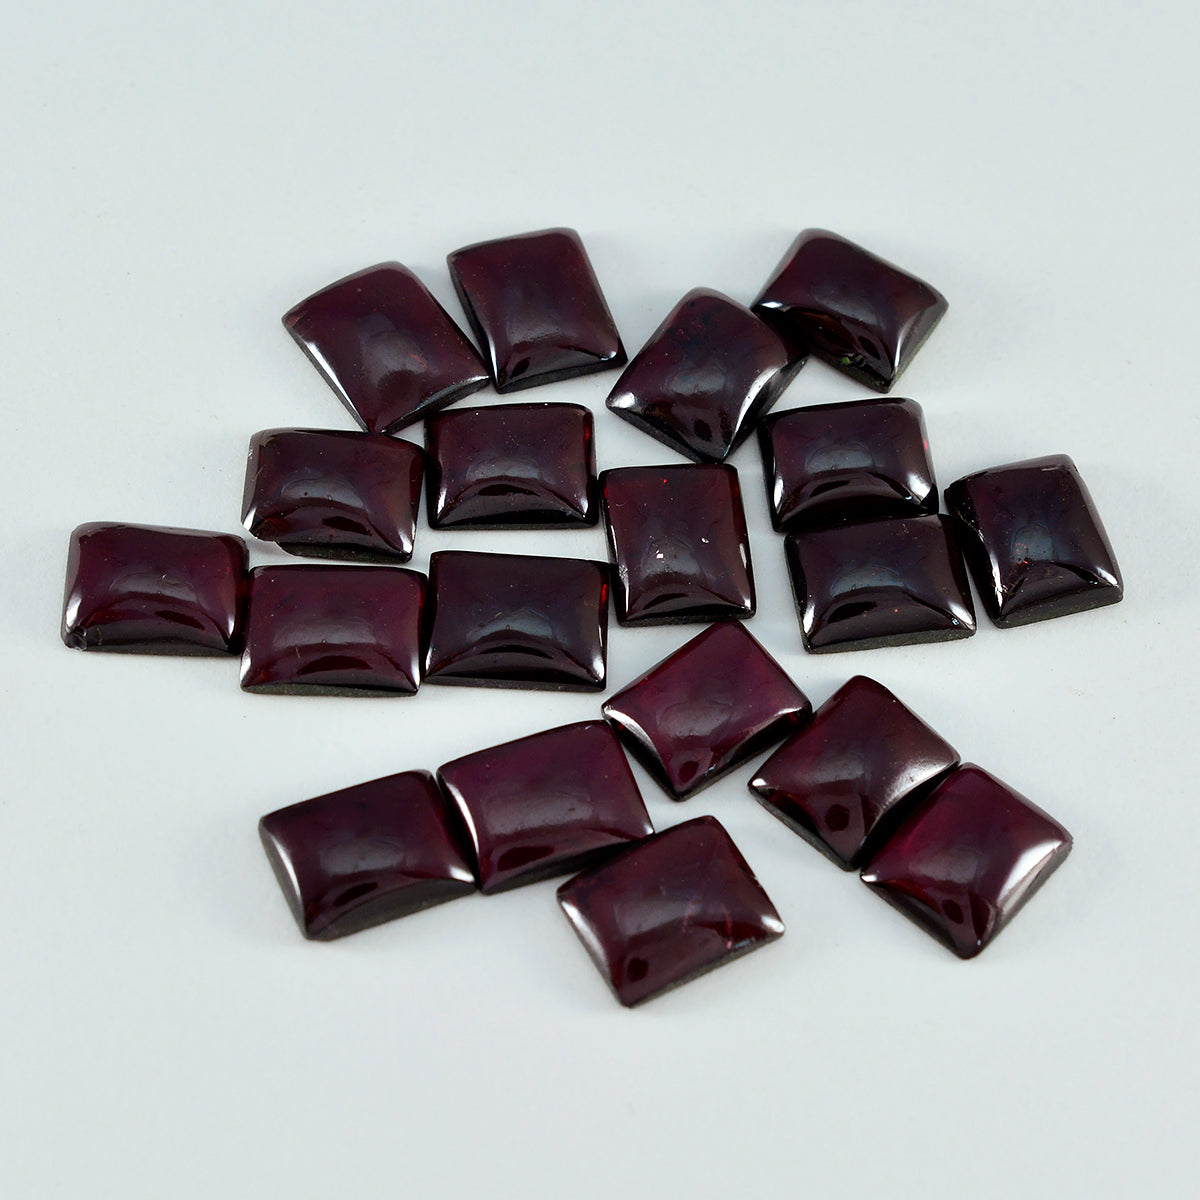 Riyogems 1PC Red Garnet Cabochon 5x7 mm Octagon Shape fantastic Quality Stone